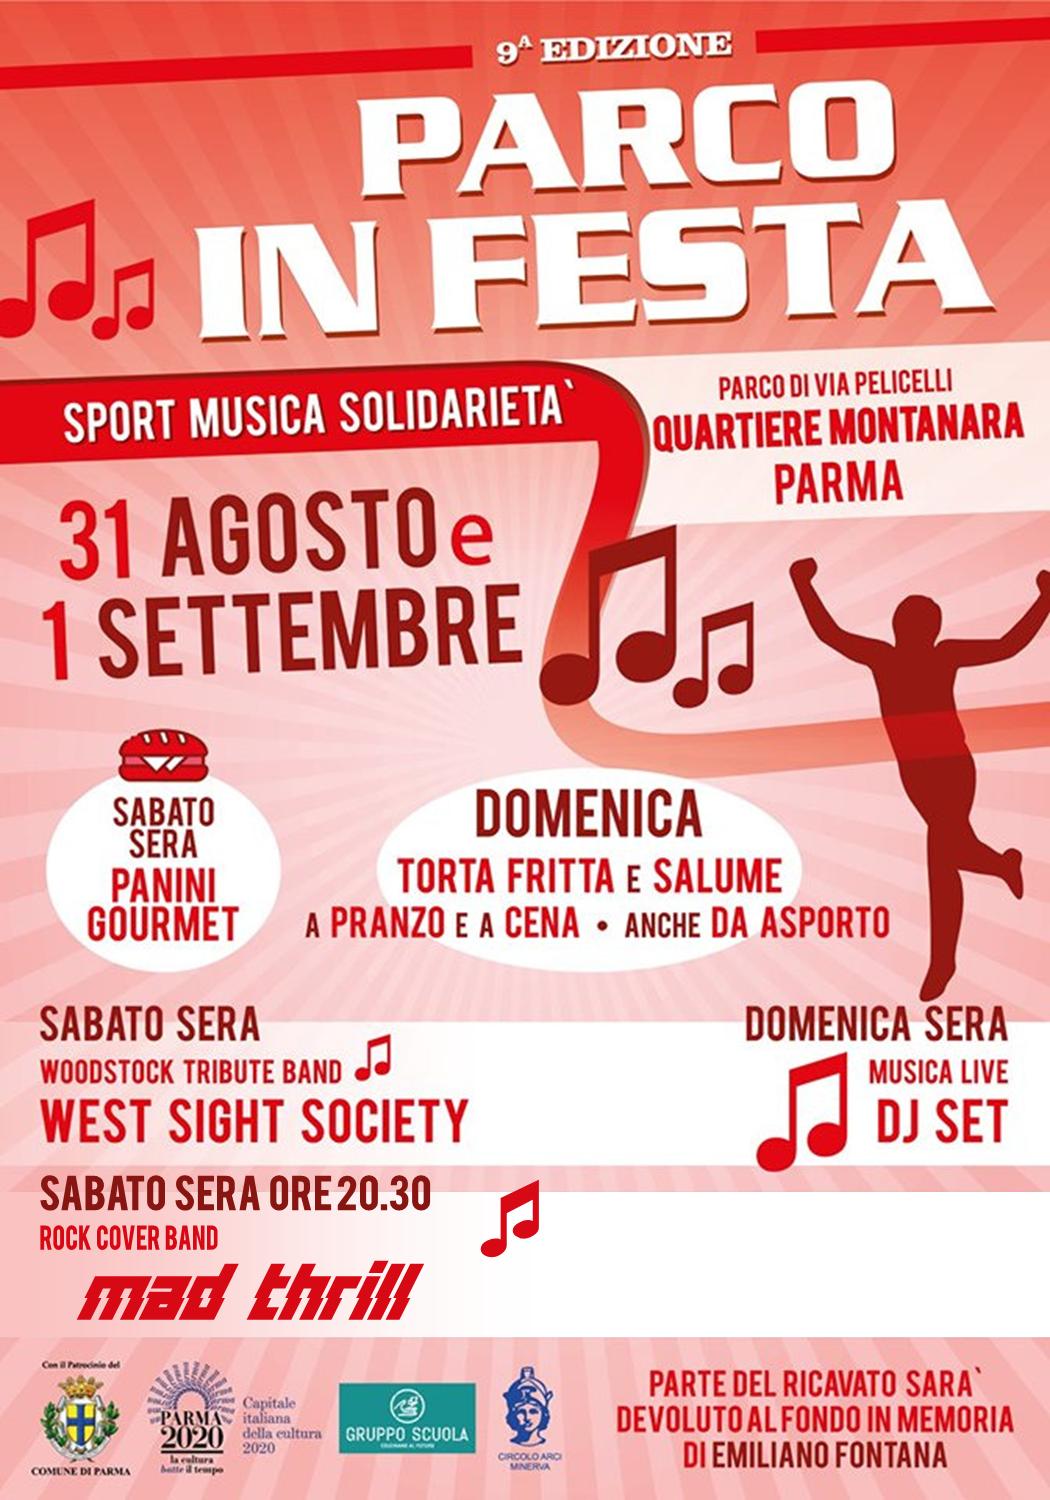 Festa quartiere Montanara Parma - sabato 31 agosto 2019 ore 20.30